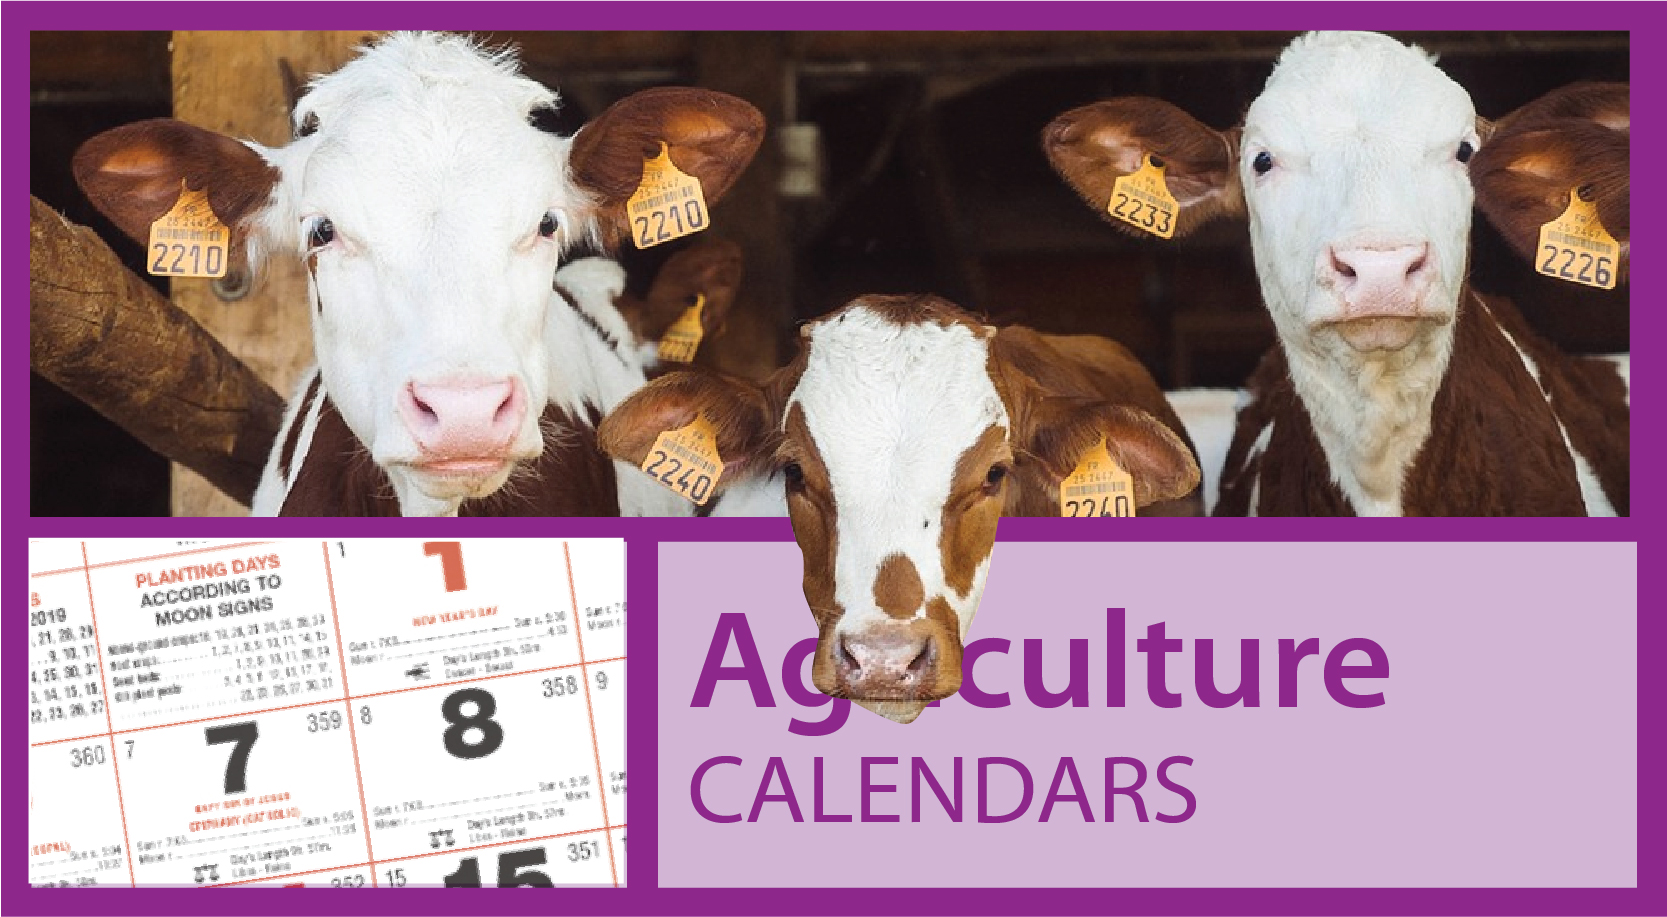 Scenic Farm Calendars | Scenic Rural Farming Calendars